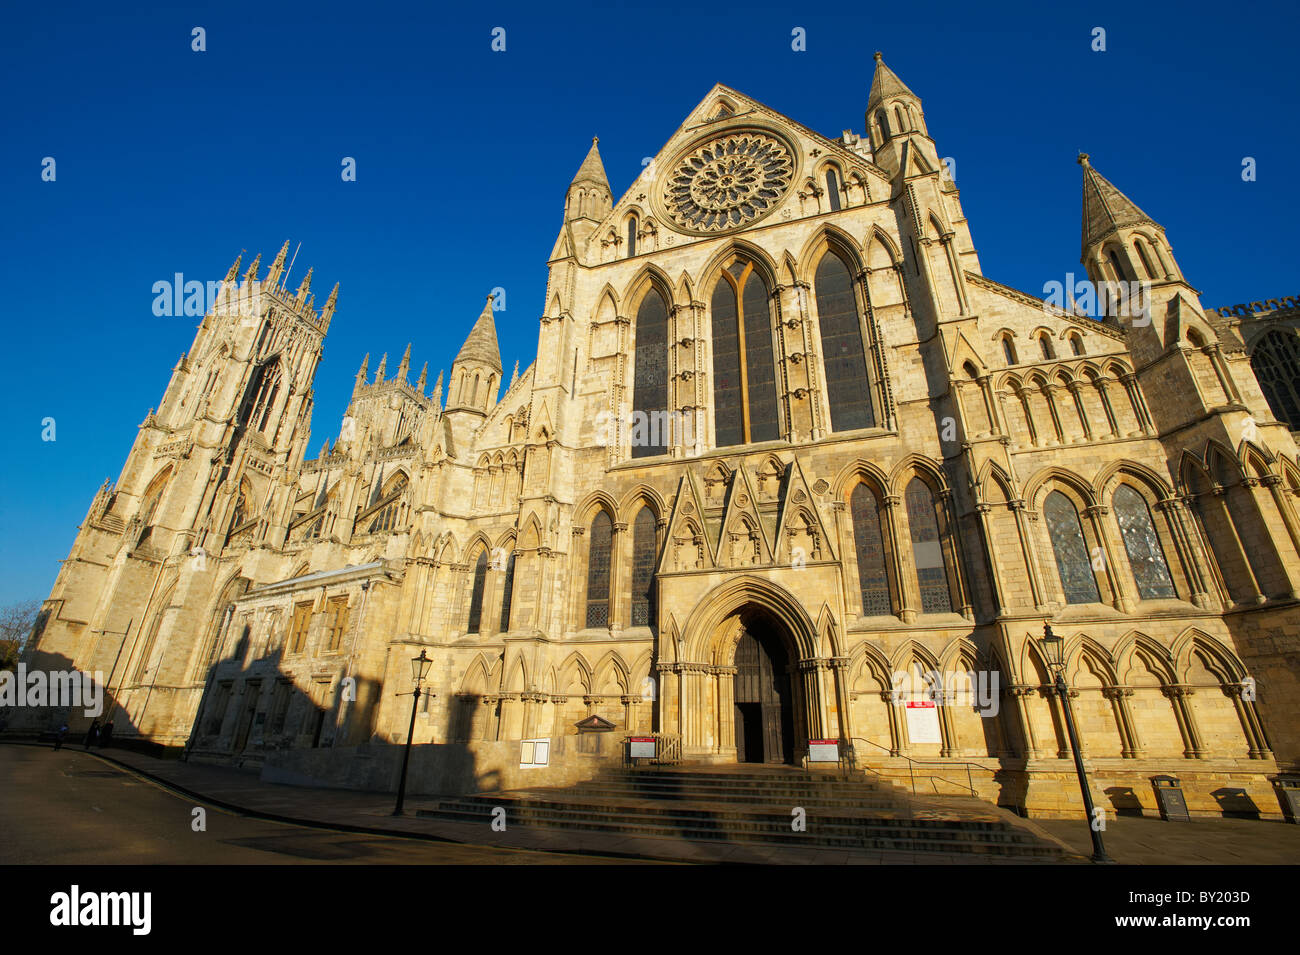 Außen gotische Architektur der Kathedrale und Metropolitical Kirche St. Peter in York, gemeinhin als das York Minster bekannt. Stockfoto